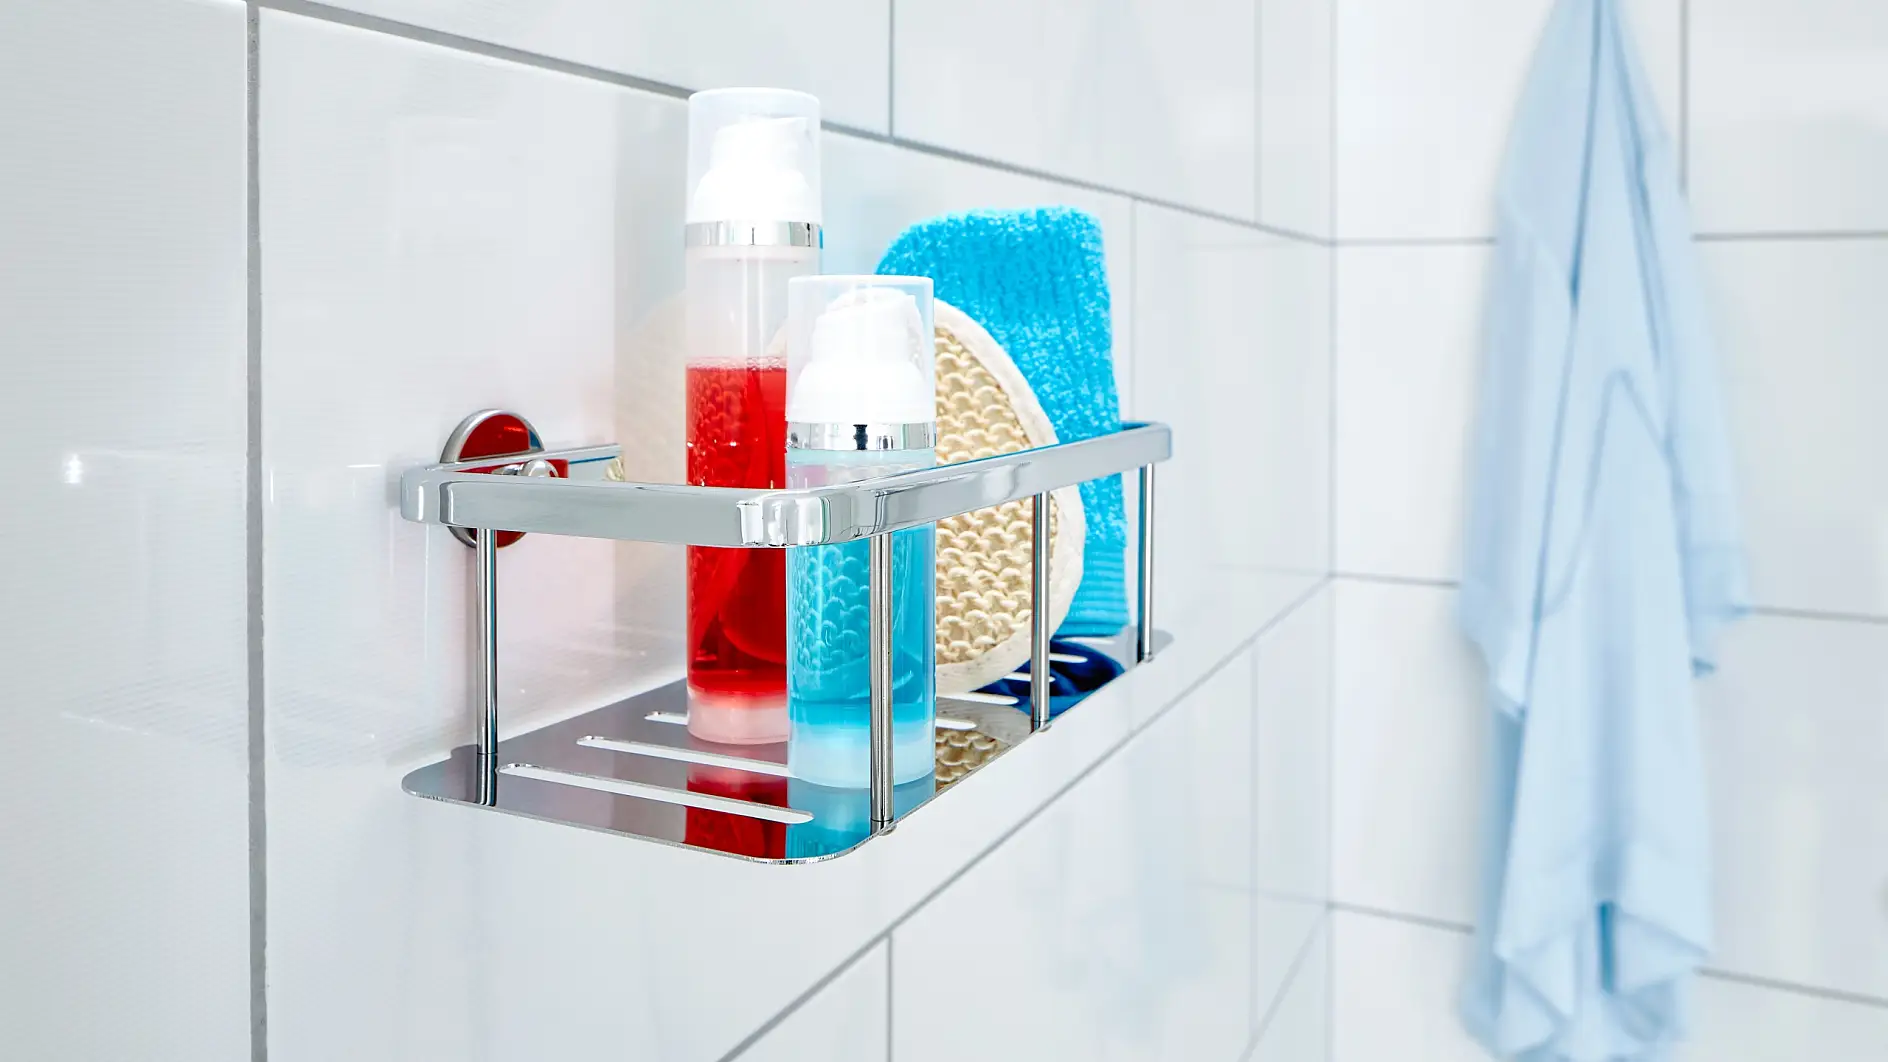 Houd je dagelijkse douchebenodigdheden klaar voor gebruik, onder handbereik maar buiten het bereik van waterdruppels.